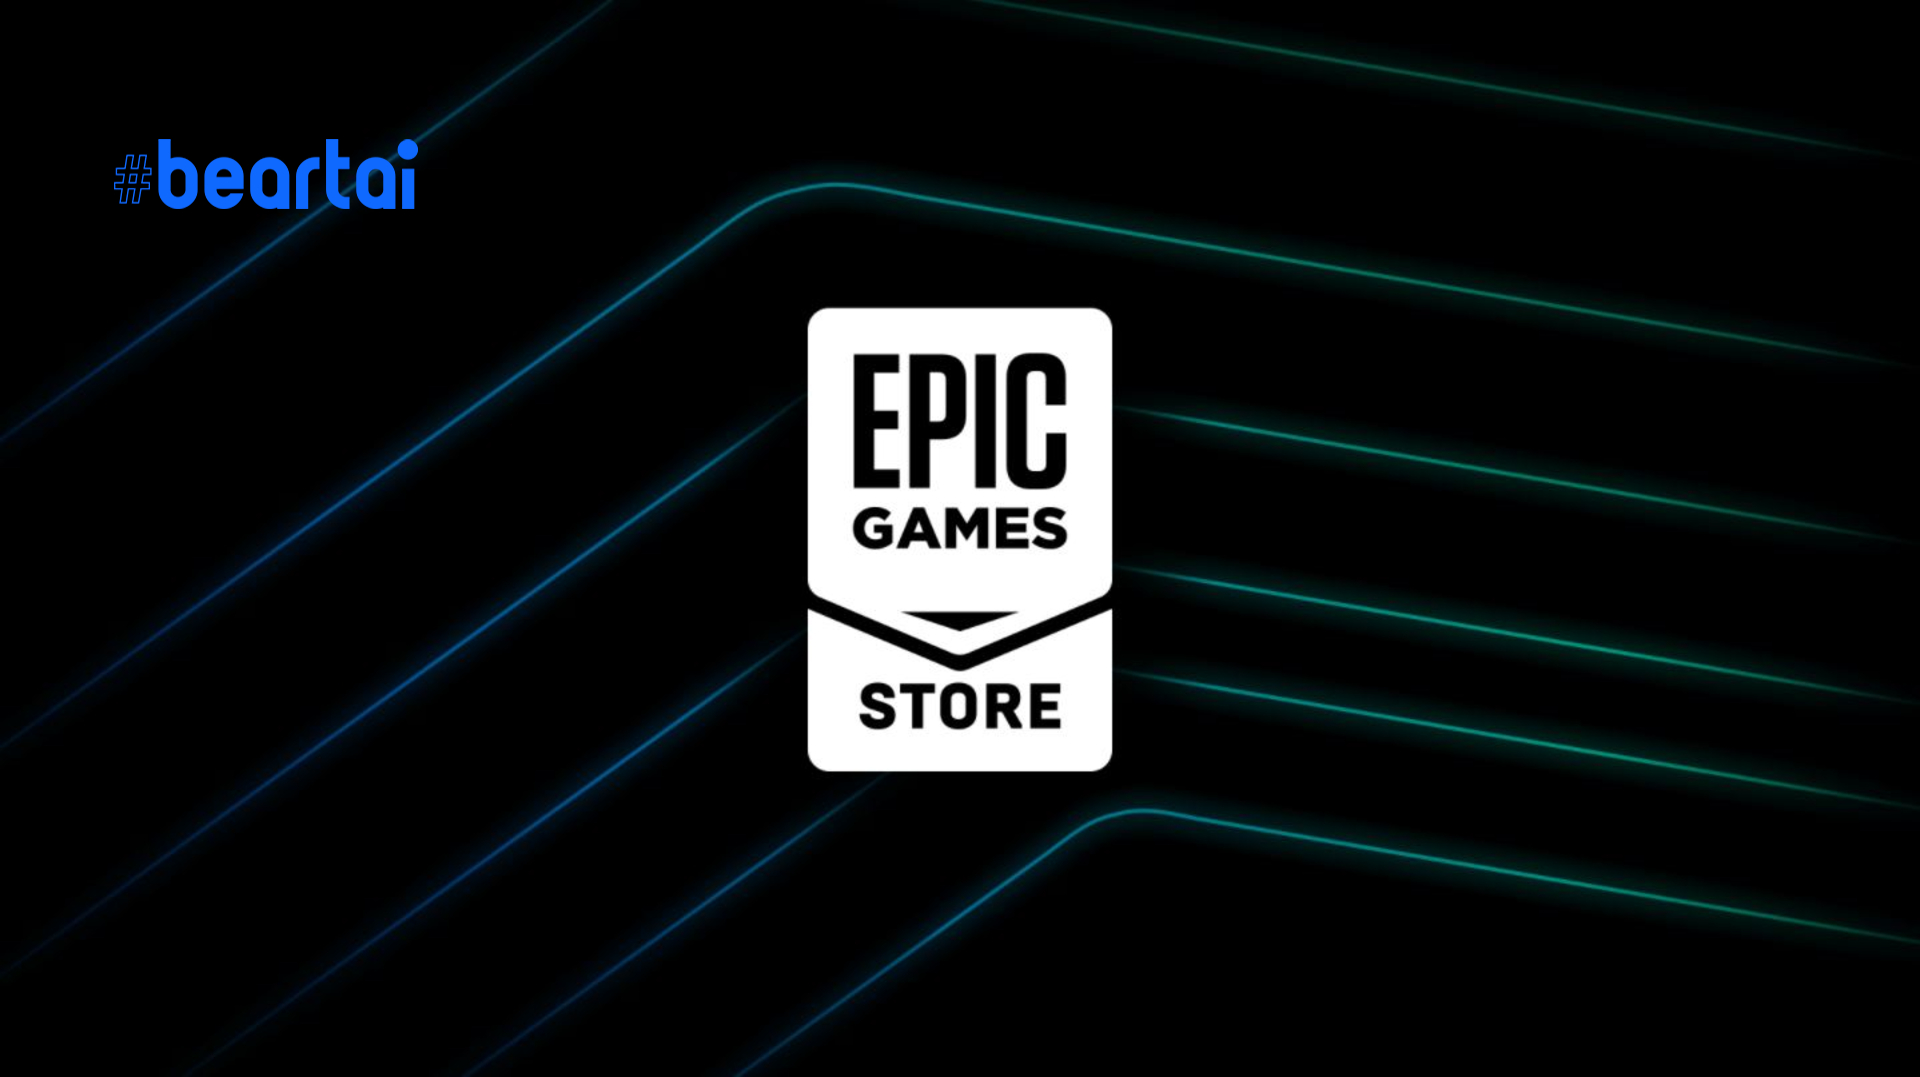 Epic Games Store แถลงการณ์ตลอดปี 2020 มีผู้ใช้งานแพลตฟอร์มนี้ทะลุเกิน 160 ล้านคน